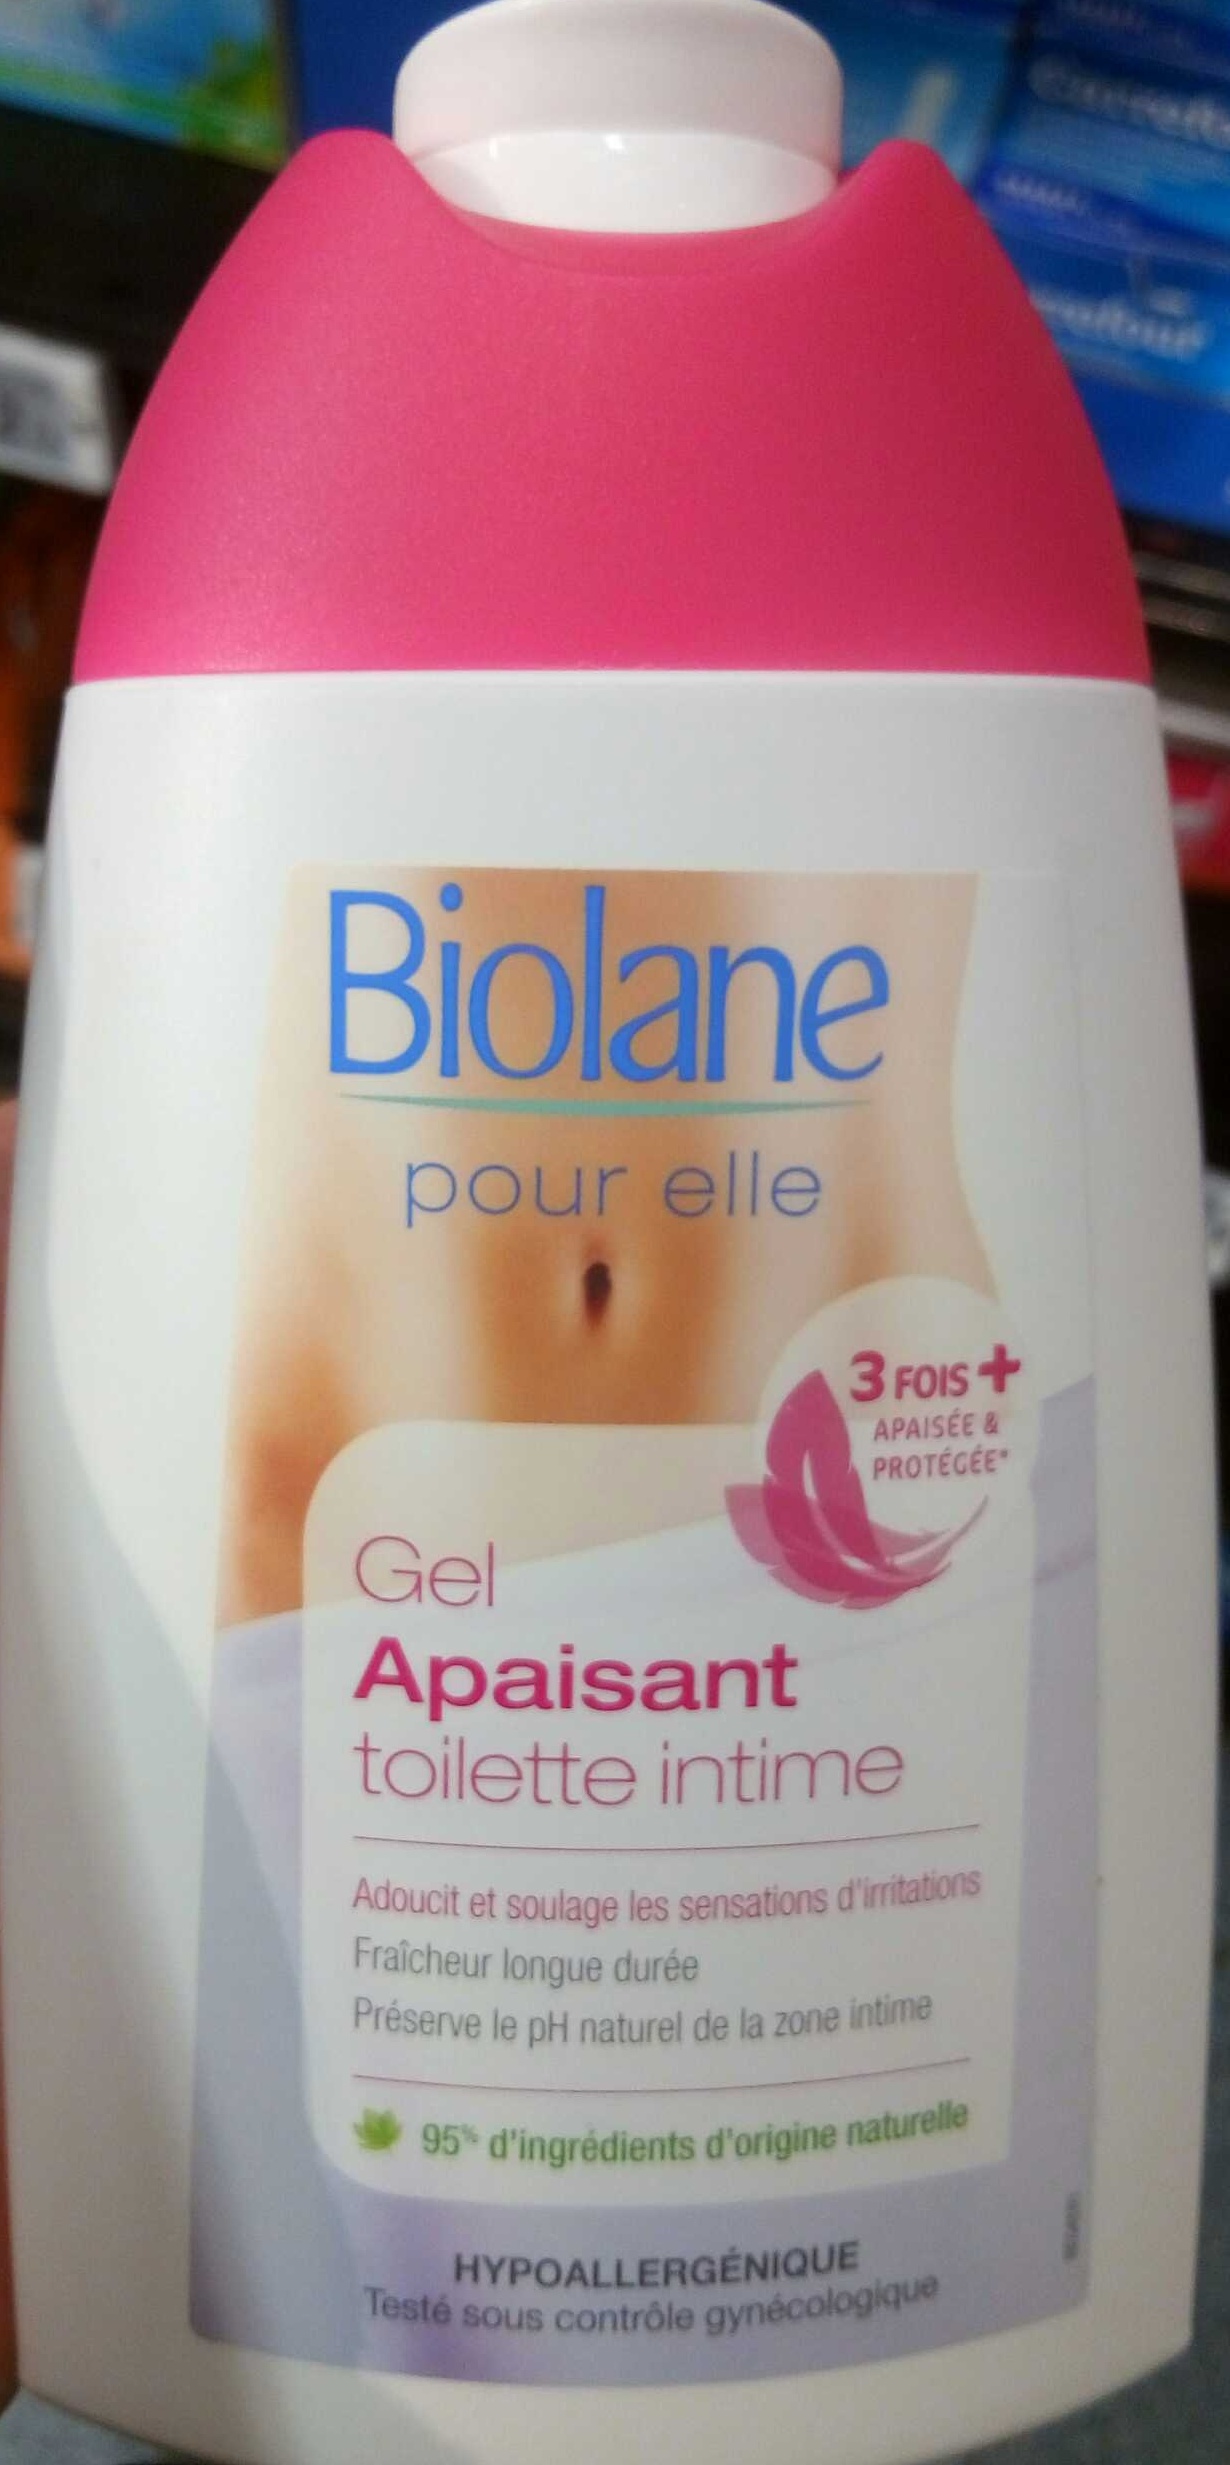 Biolane - Eau de Toilette Spray - 200 ml : : Beauty